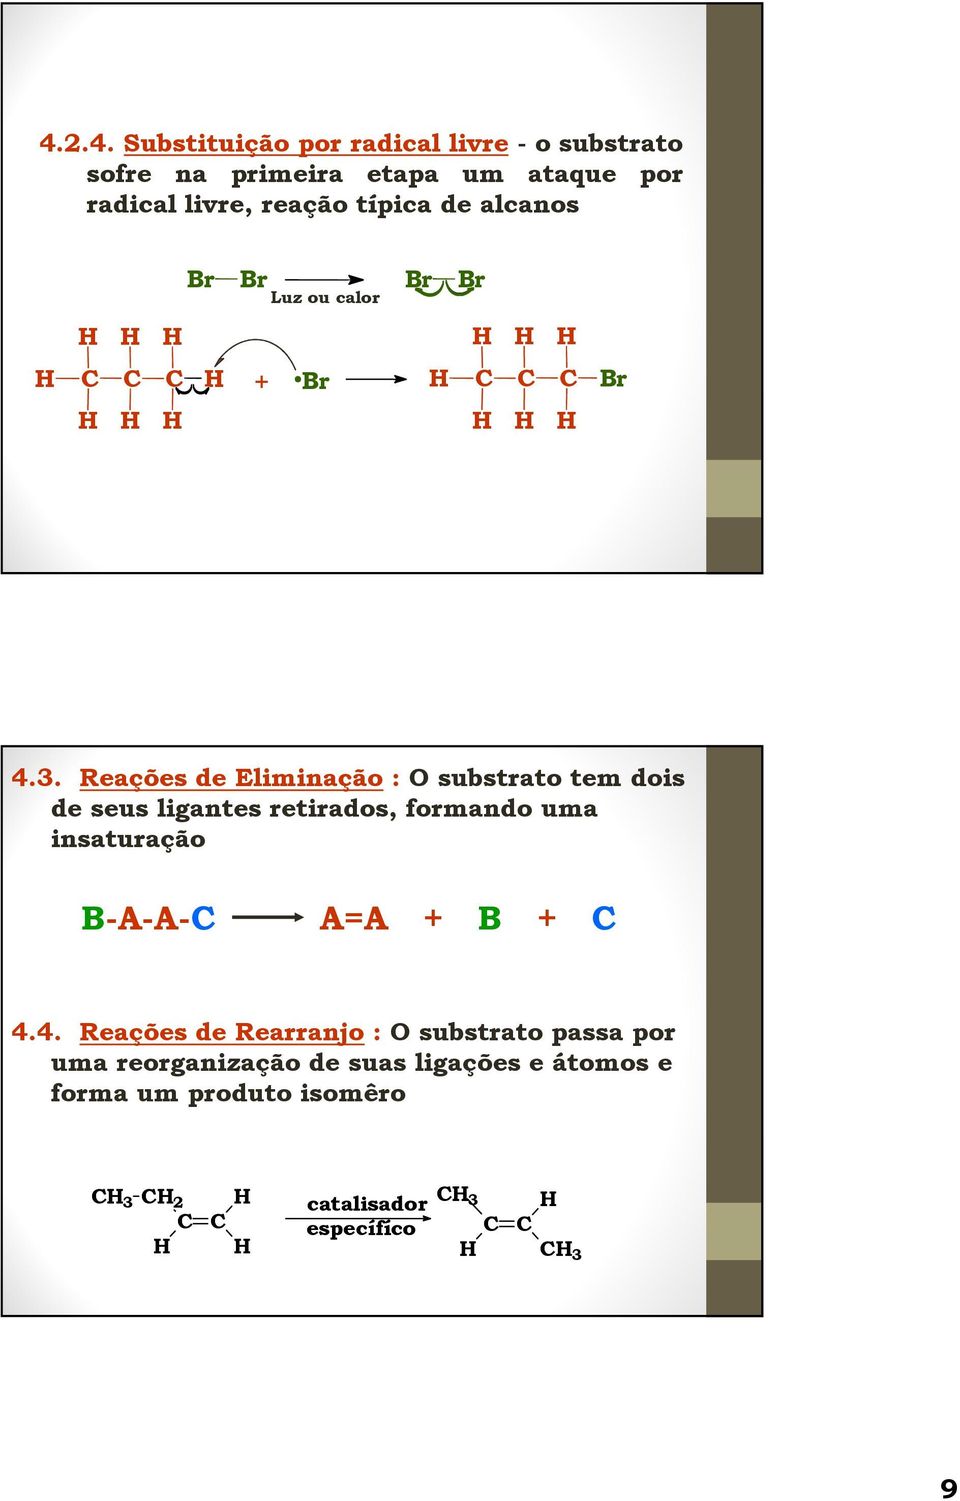 Reações de Eliminação : substrato tem dois de seus ligantes retirados, formando uma insaturação